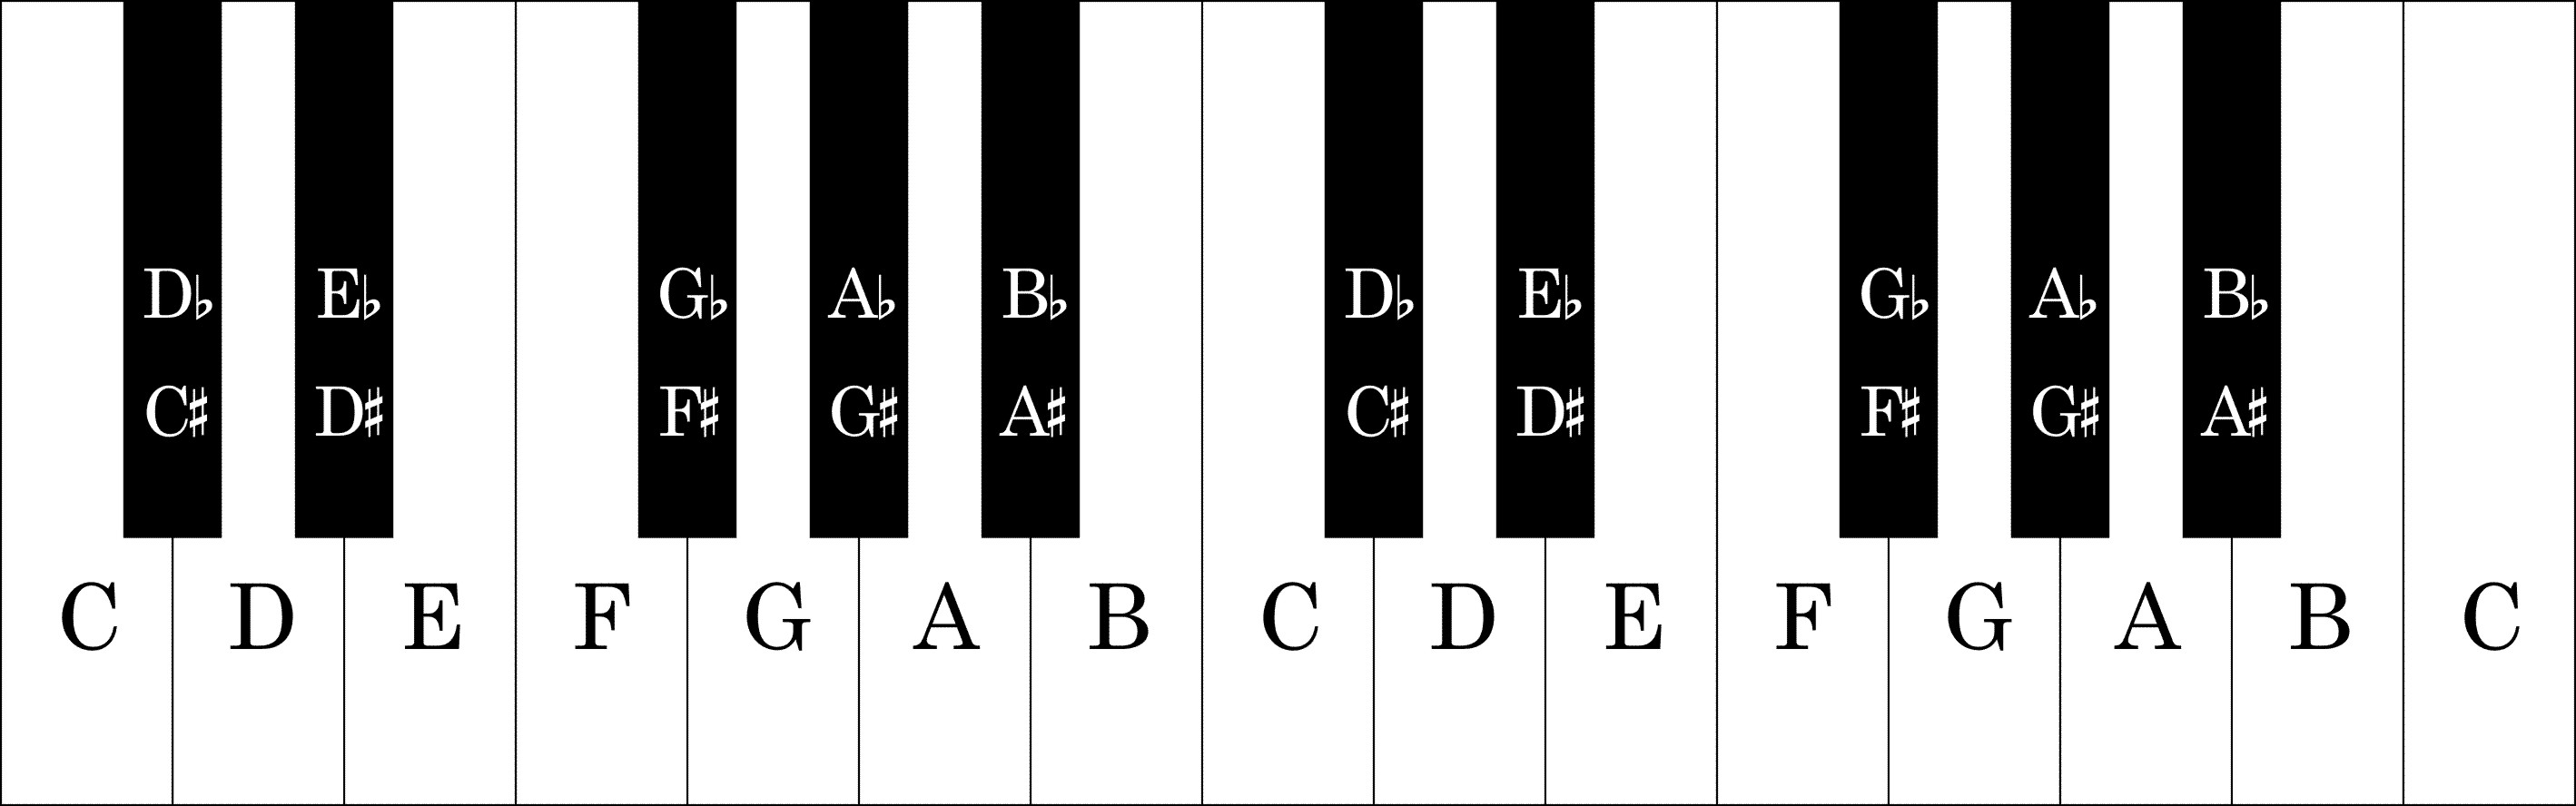 music keys in order